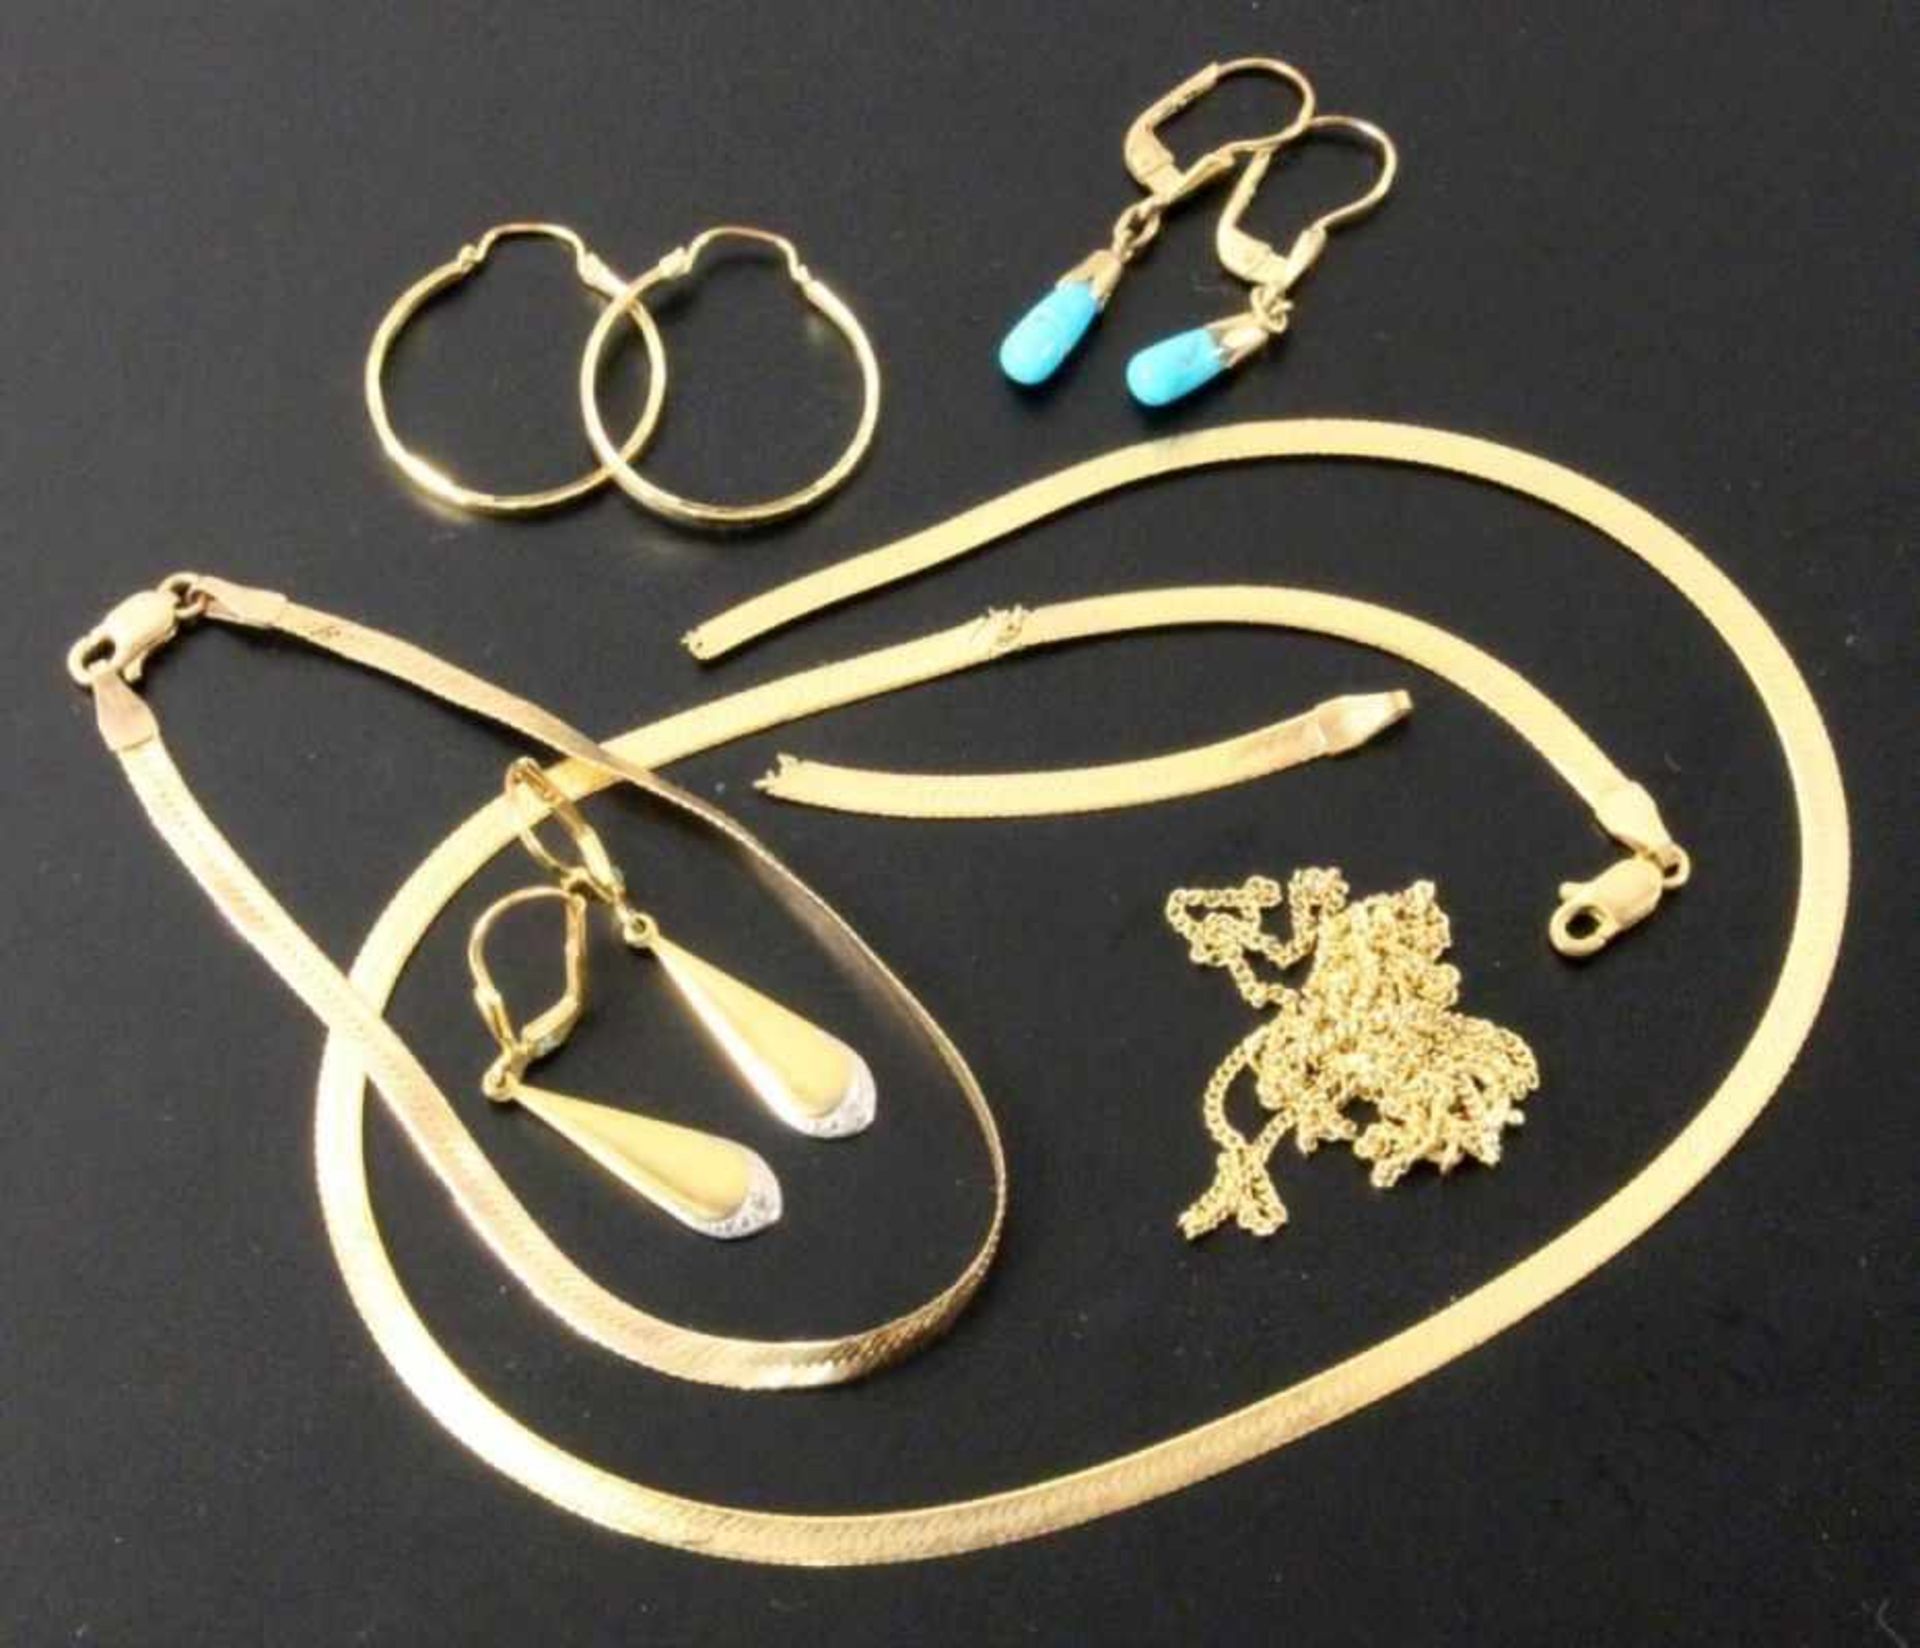 KONVOLUT GOLDSCHMUCK 333/000 Gelbgold. 3 Paar Ohrringe, 2 Halsketten und Armkette. Brutto ca. 14,